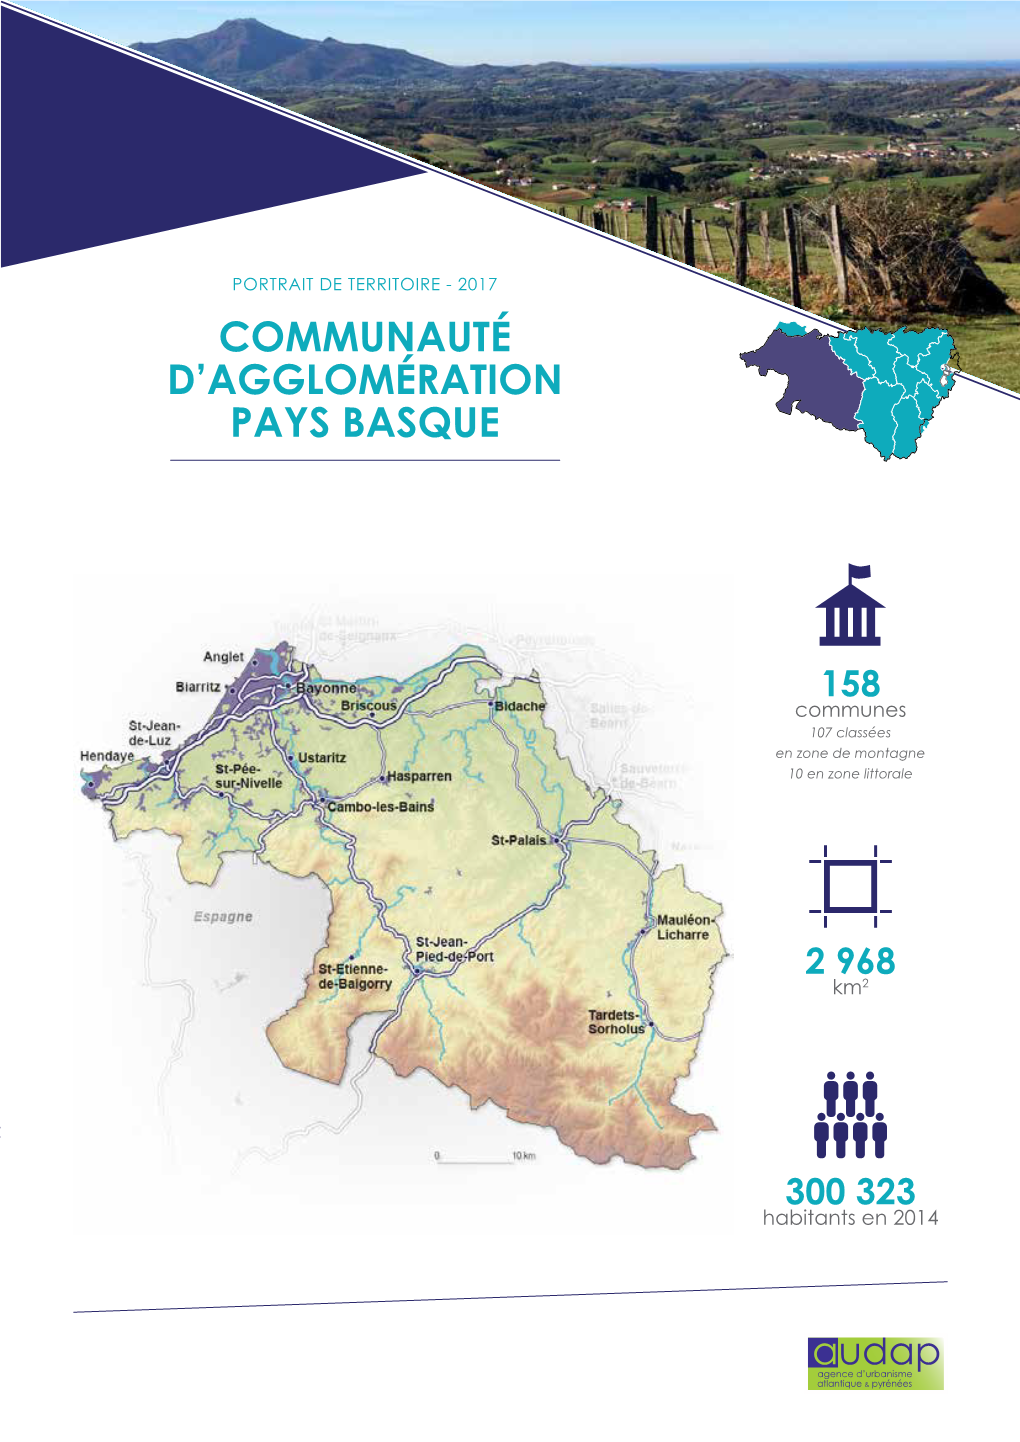 Communauté D'agglomération Pays Basque